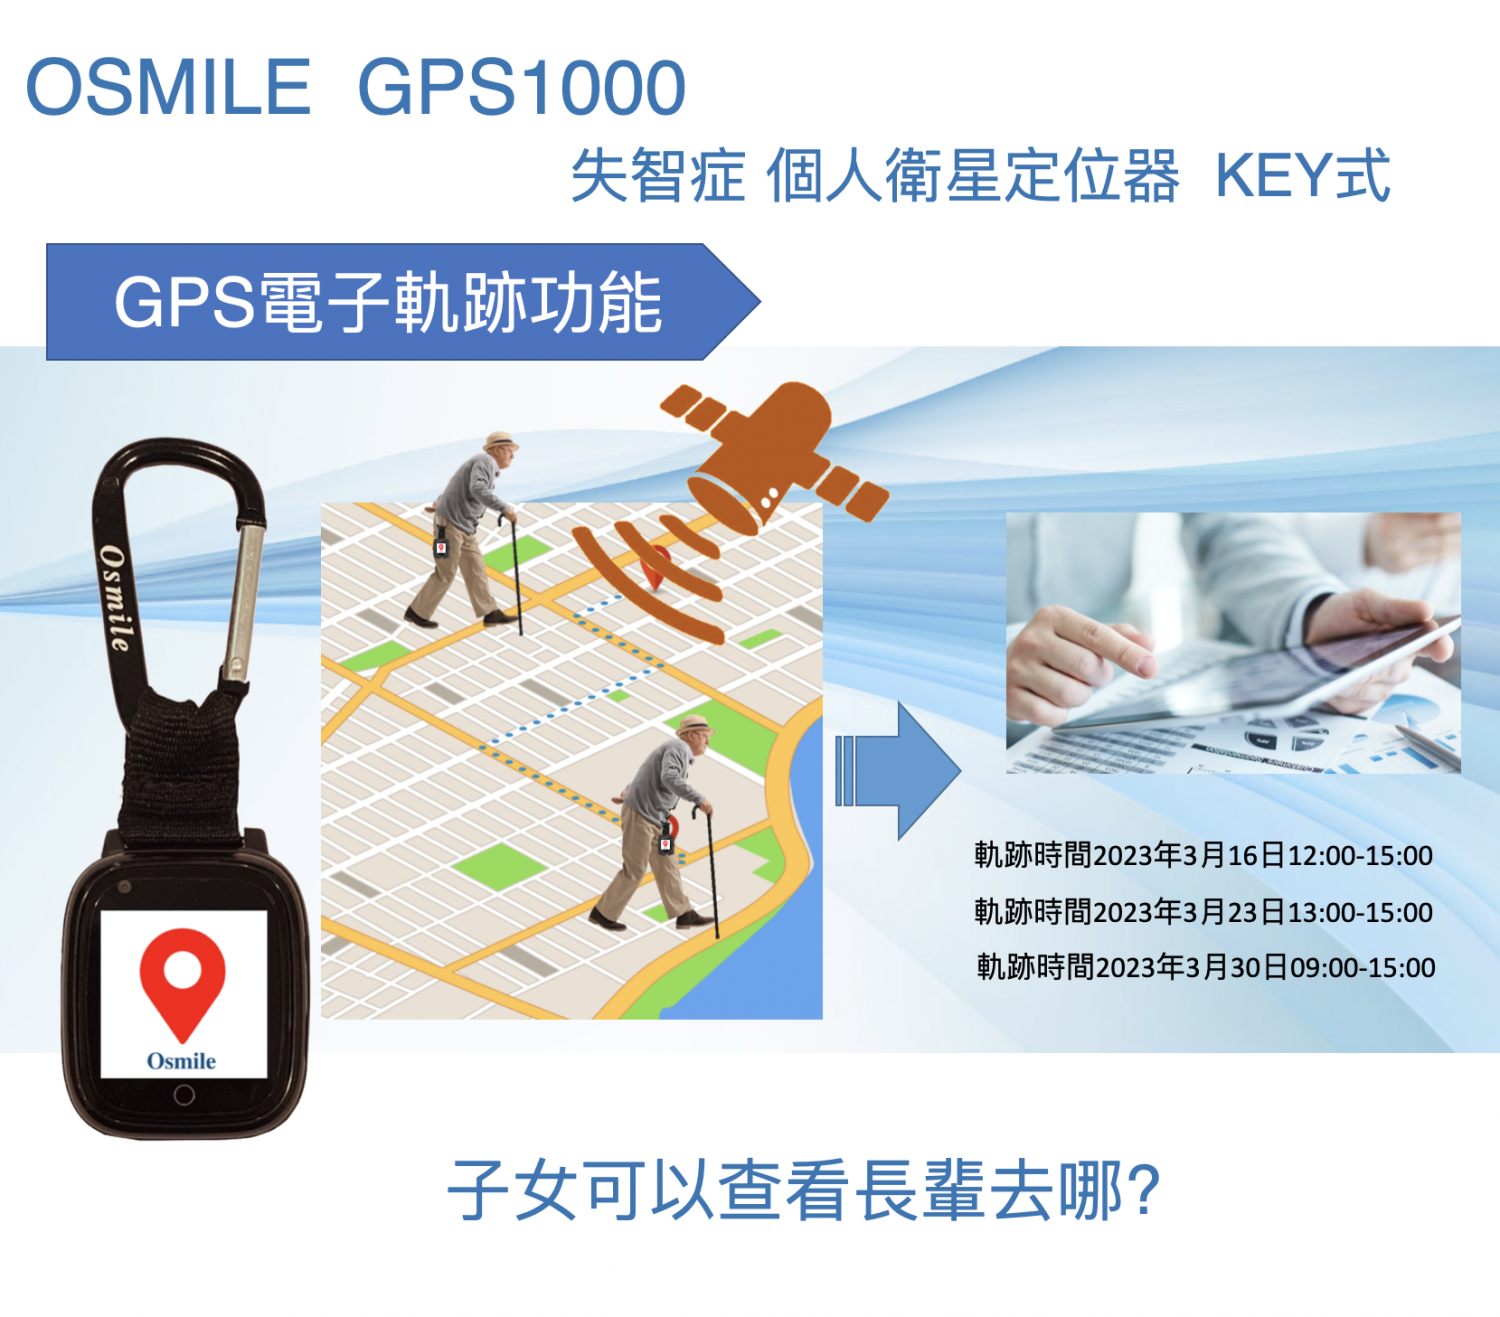 Osmile GPS1000 KEY (L) 獨居老人跌倒偵測一鍵求救與失智老人防走失AGPS個人衛星定位器鑰匙圈 (原廠一年保固_可搭配錶帶作血氧濃度與遠距腕溫量測)